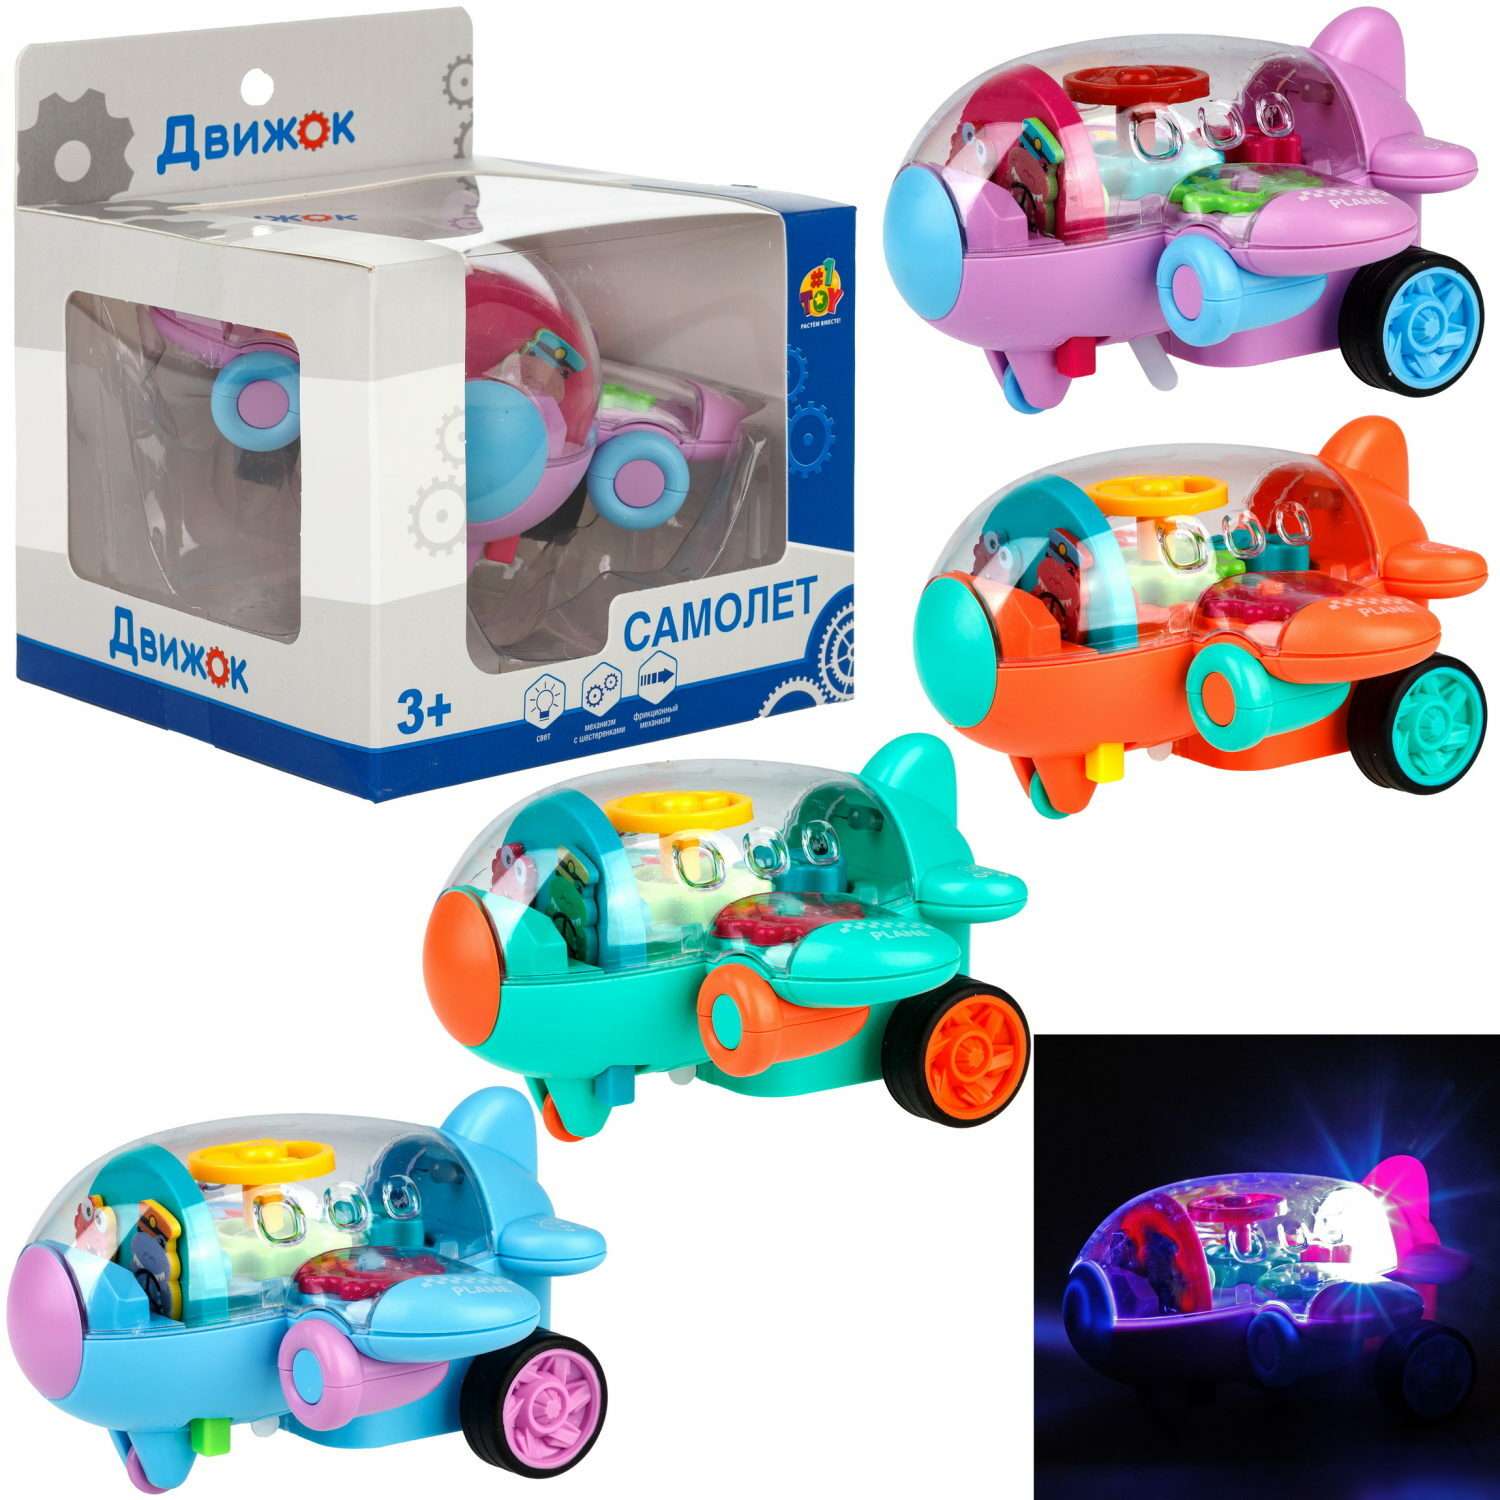 Самолет игрушка для детей 1TOY Движок голубой прозрачный с шестеренками светящийся на батарейках - фото 10